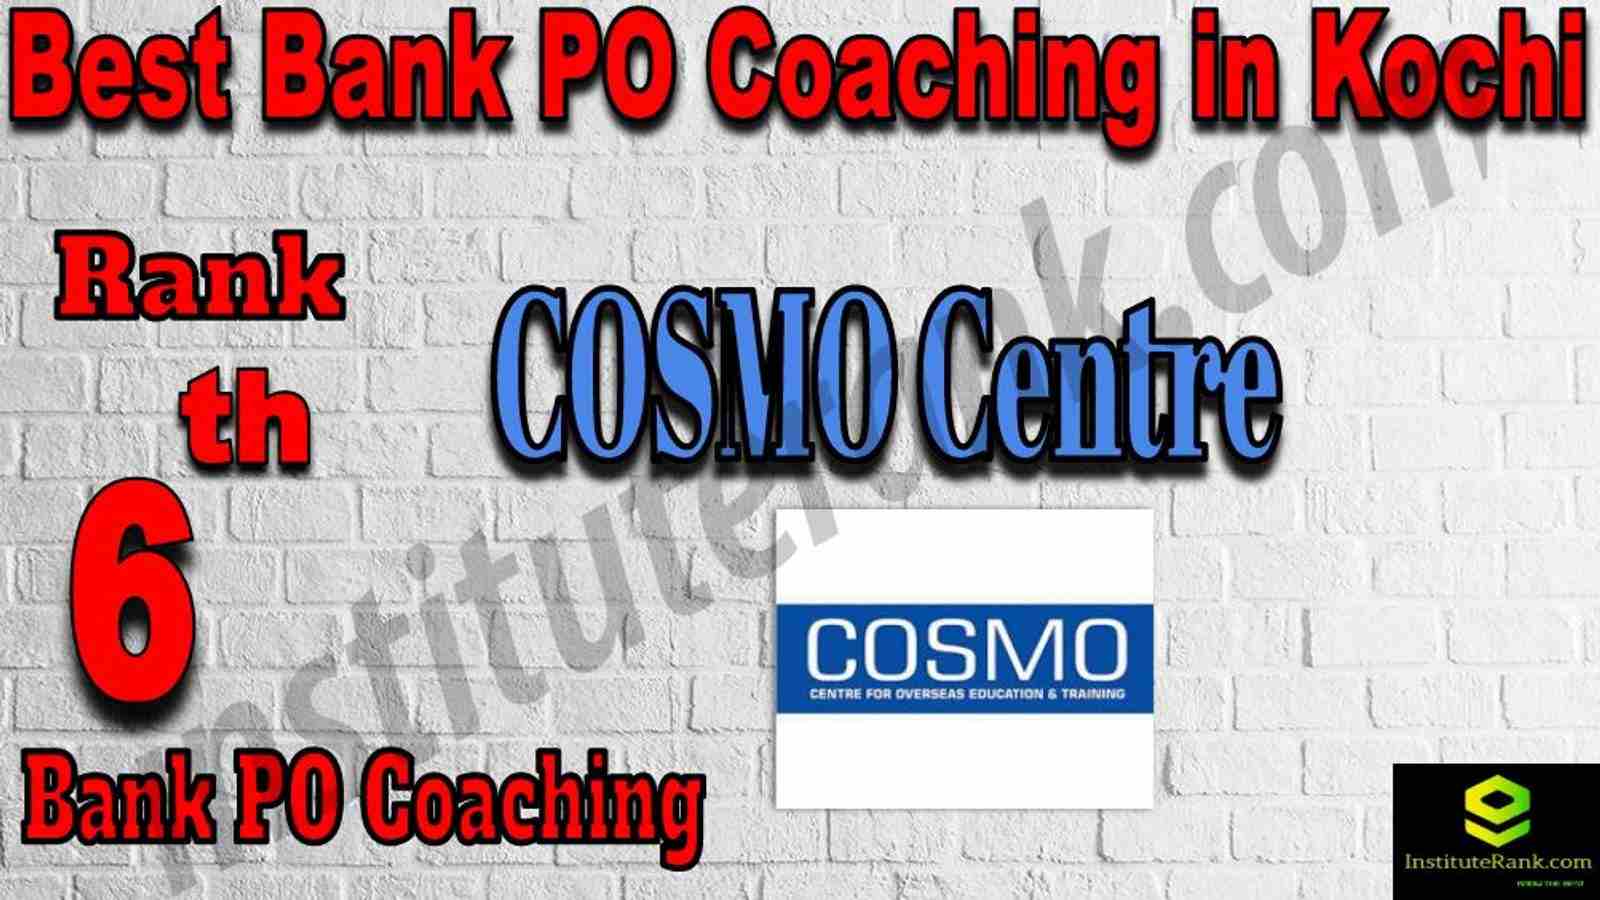 6th Best Bank PO Coaching in Kochi